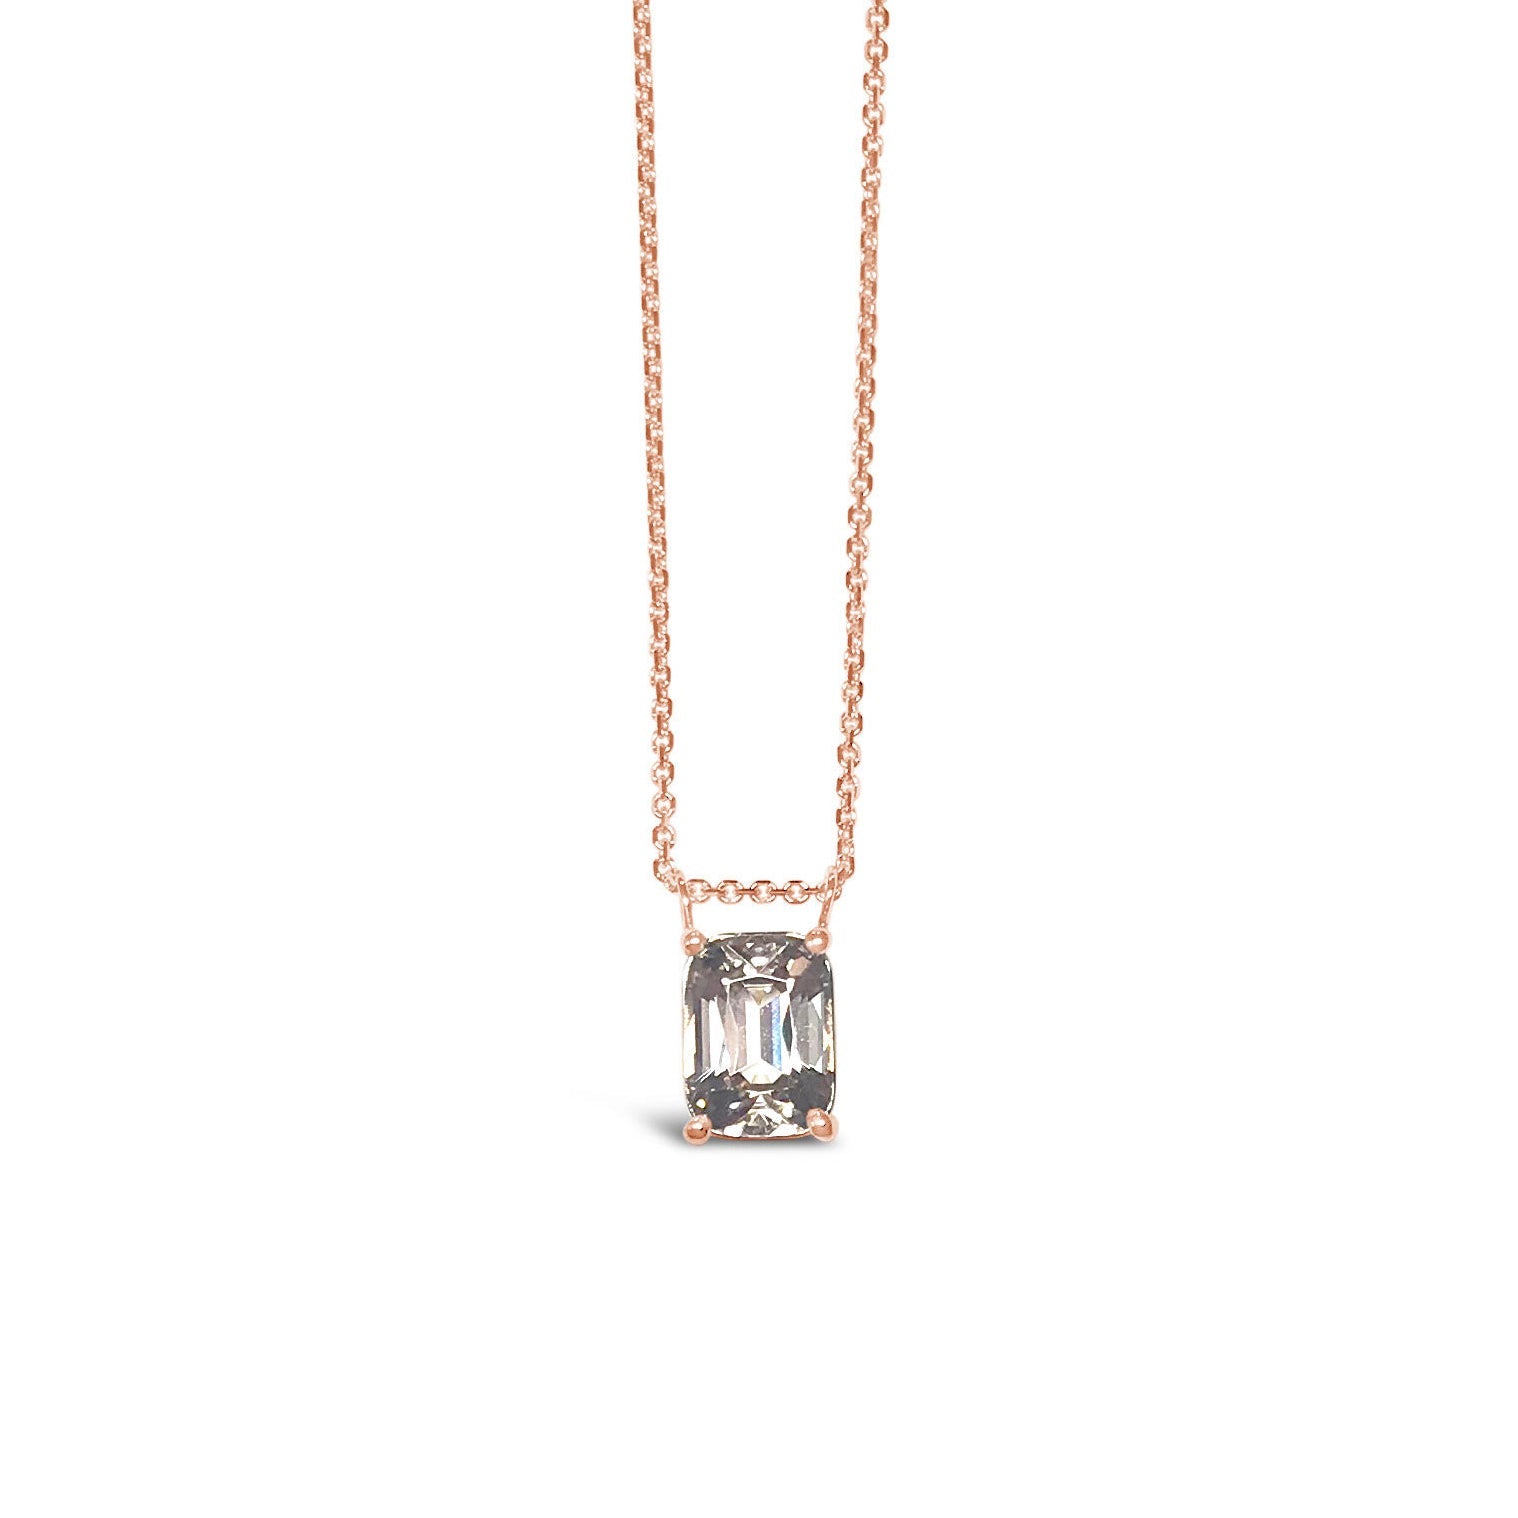 WONDERLAND || Peach tourmaline necklace